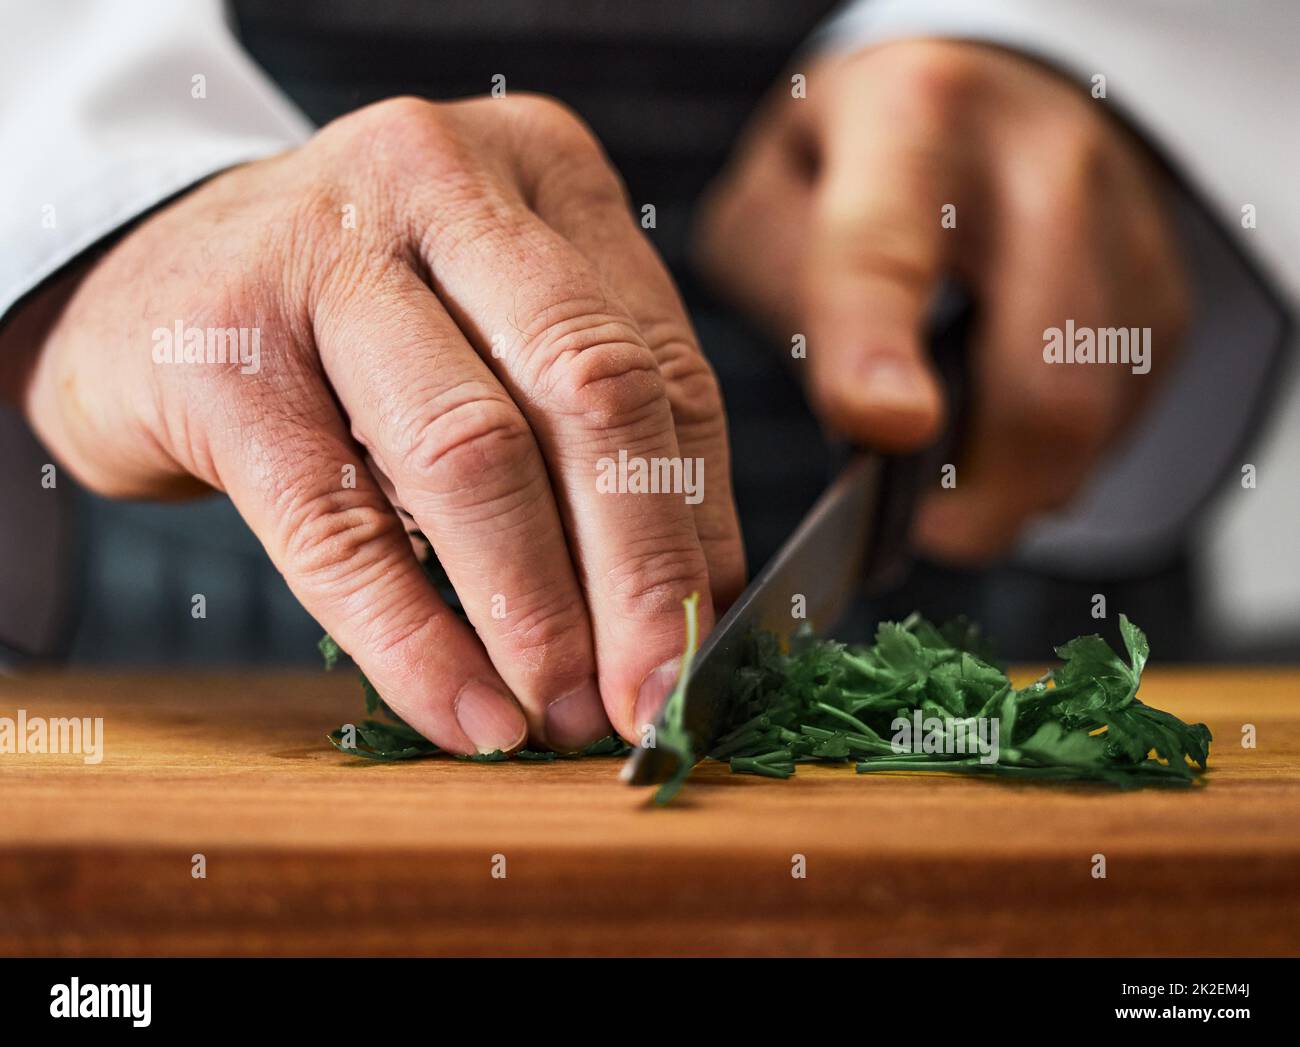 Herbes, les héros méconnus de toute histoire culinaire. Photo d'un homme méconnu qui coupe du persil frais sur une planche à découper. Banque D'Images